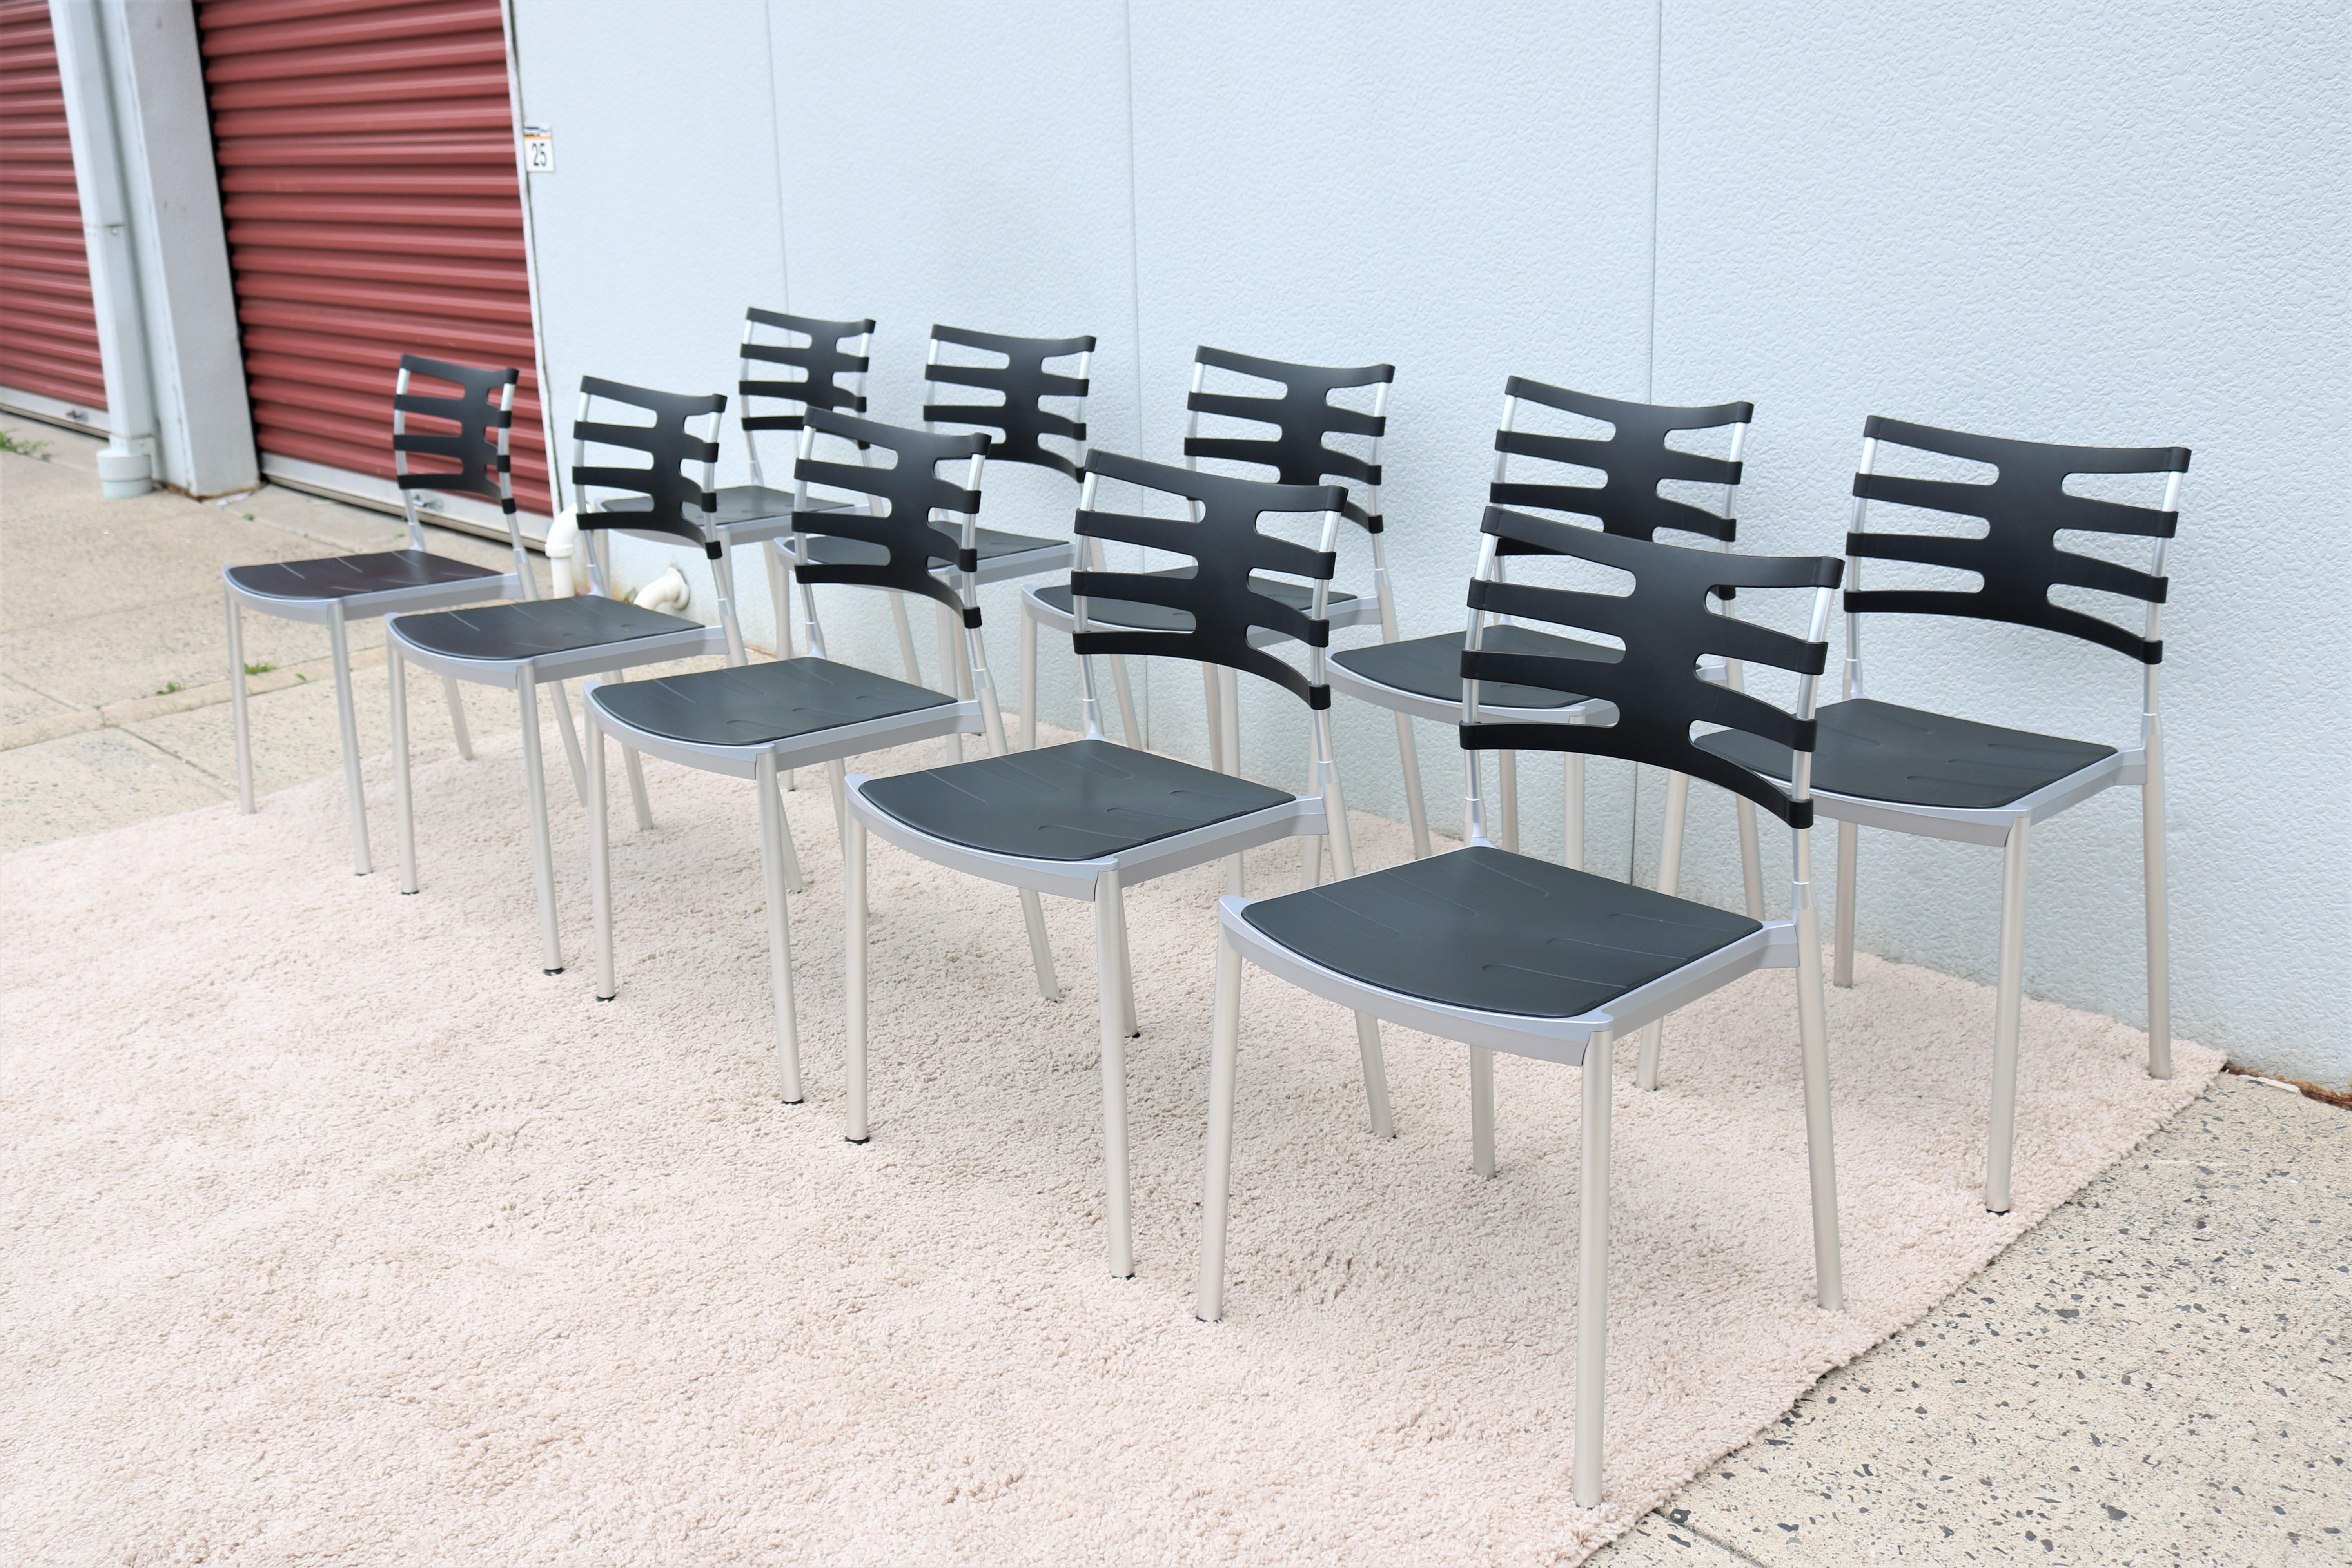 Die eleganten und minimalistischen Ice-Stühle sind stilvoll und funktional. Ice ist der erste Stuhl von Fritz Hansen, der sowohl für den Innen- als auch für den Außenbereich geeignet ist.
Das leichte Design und die Stapelfunktion machen ihn zum